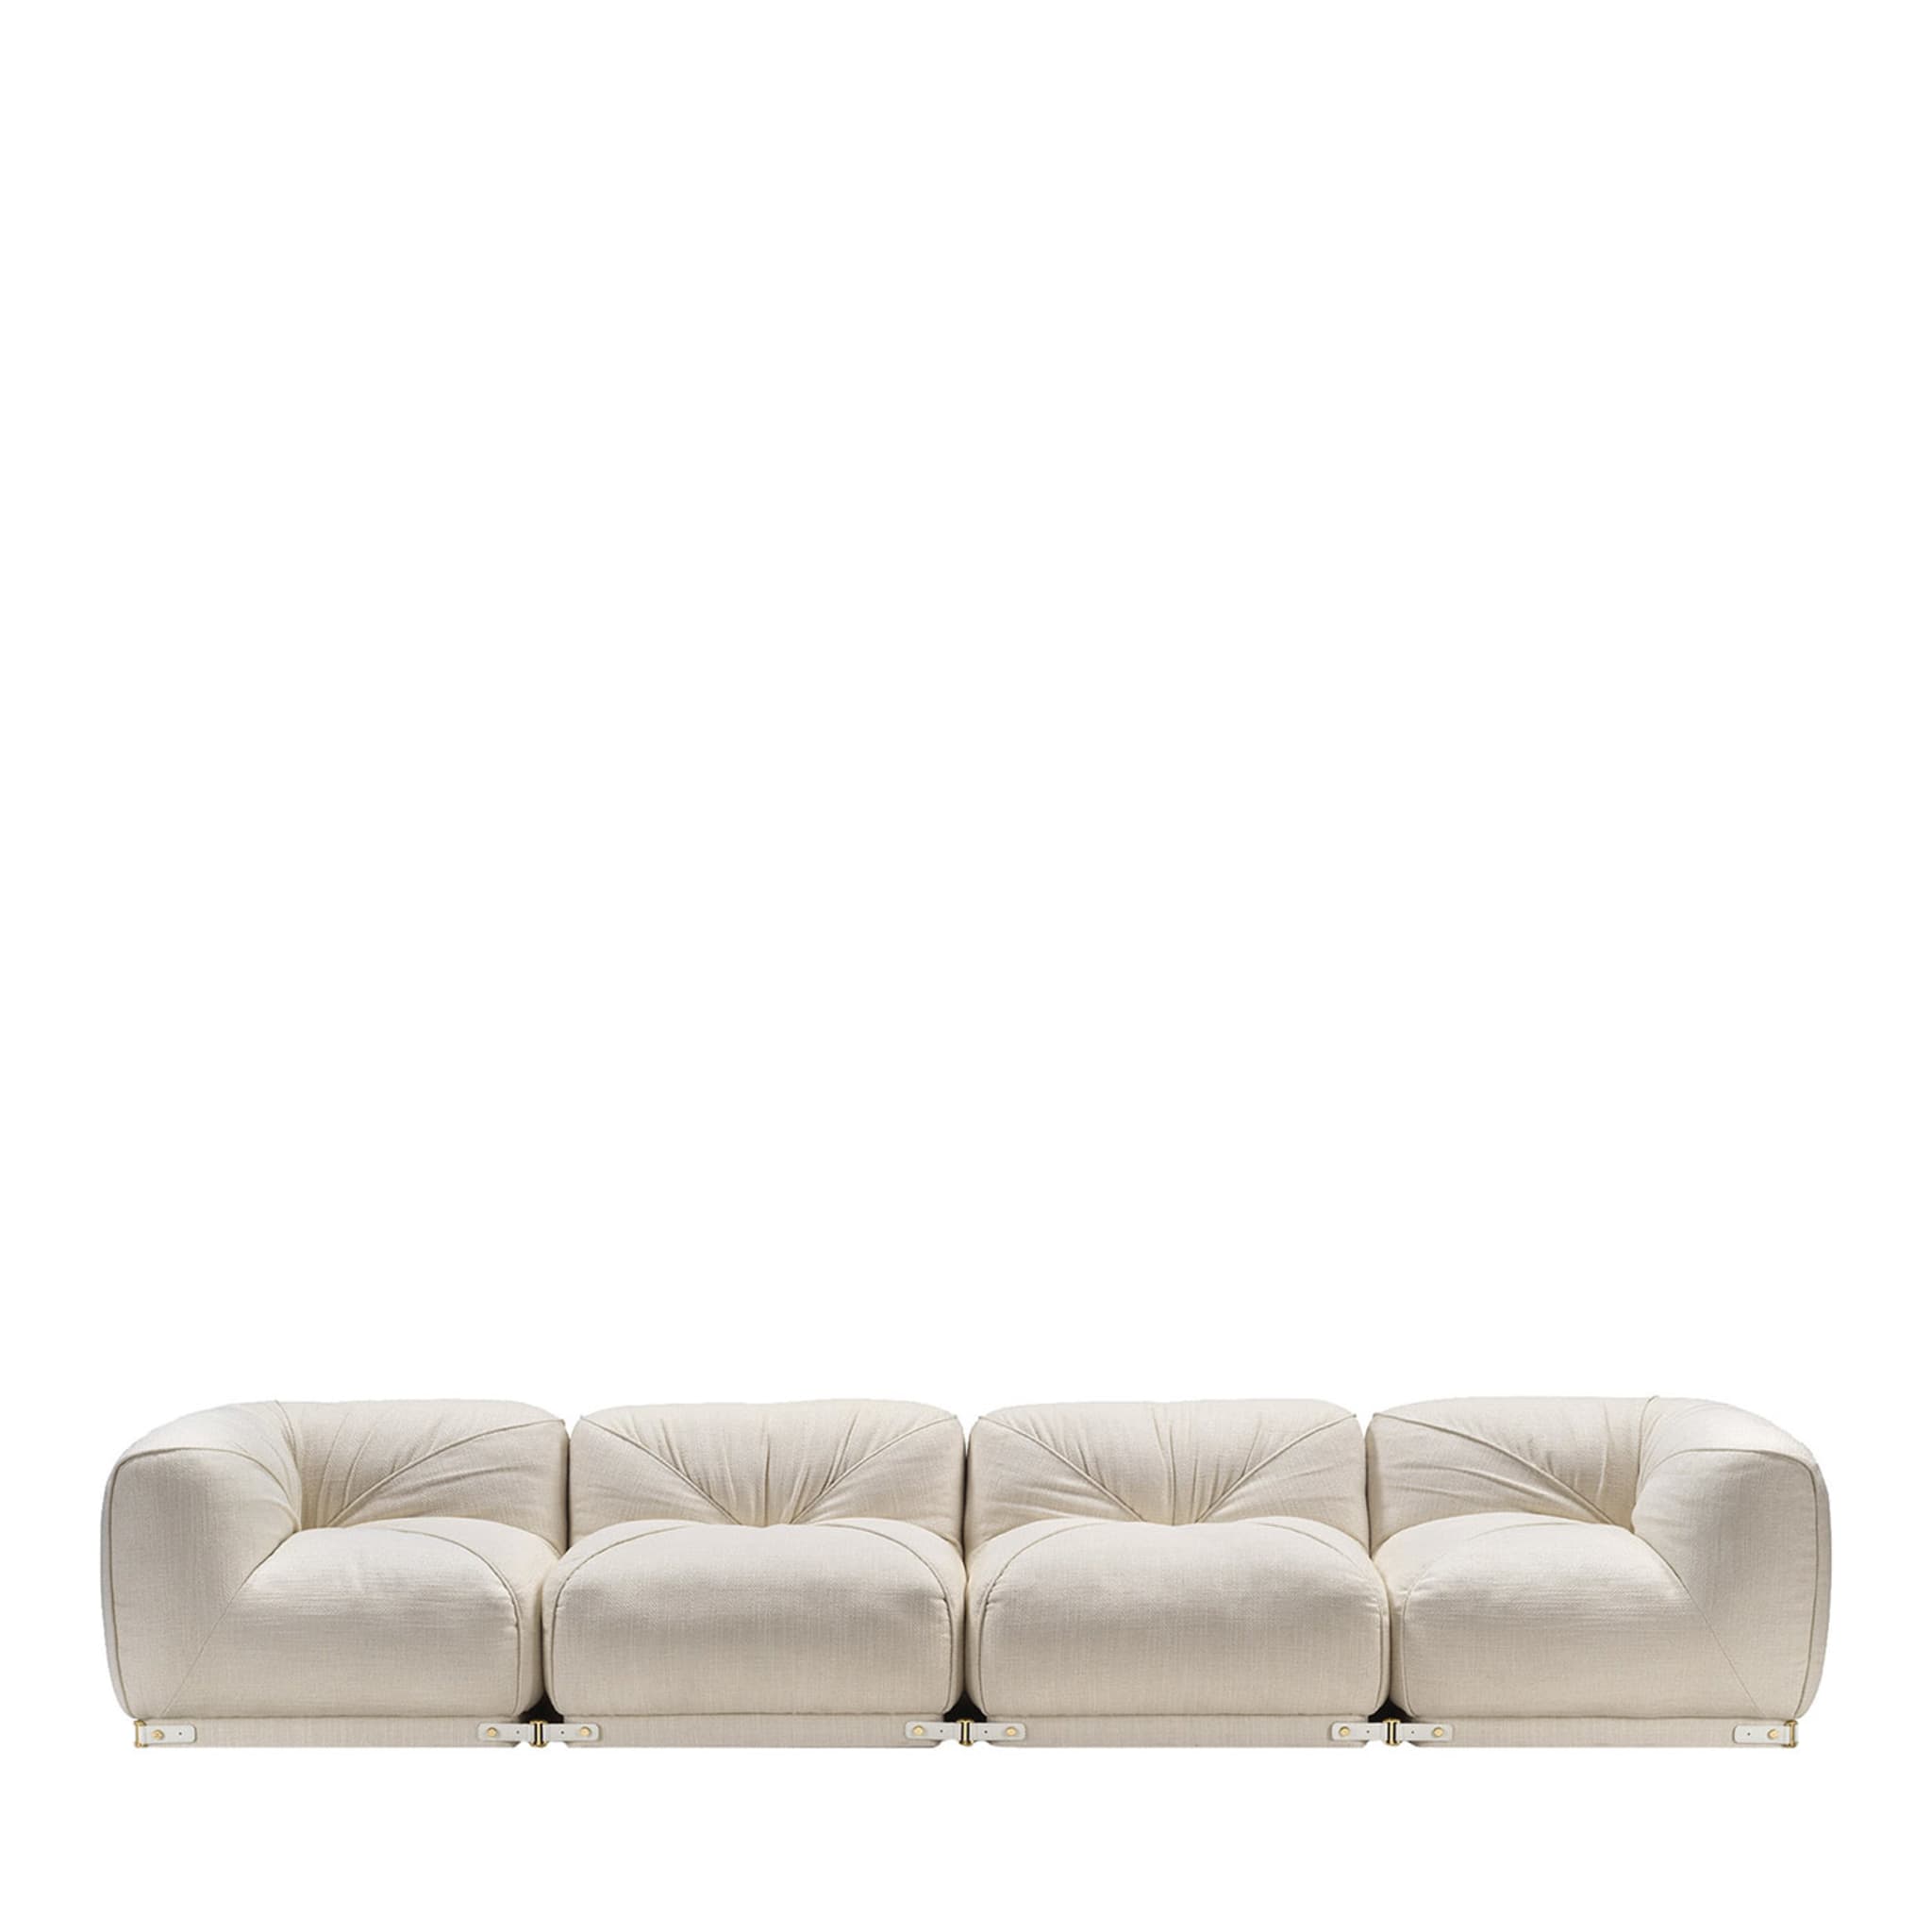 Leisure 4-Seater White Sofa by Lorenza Bozzoli - Main view